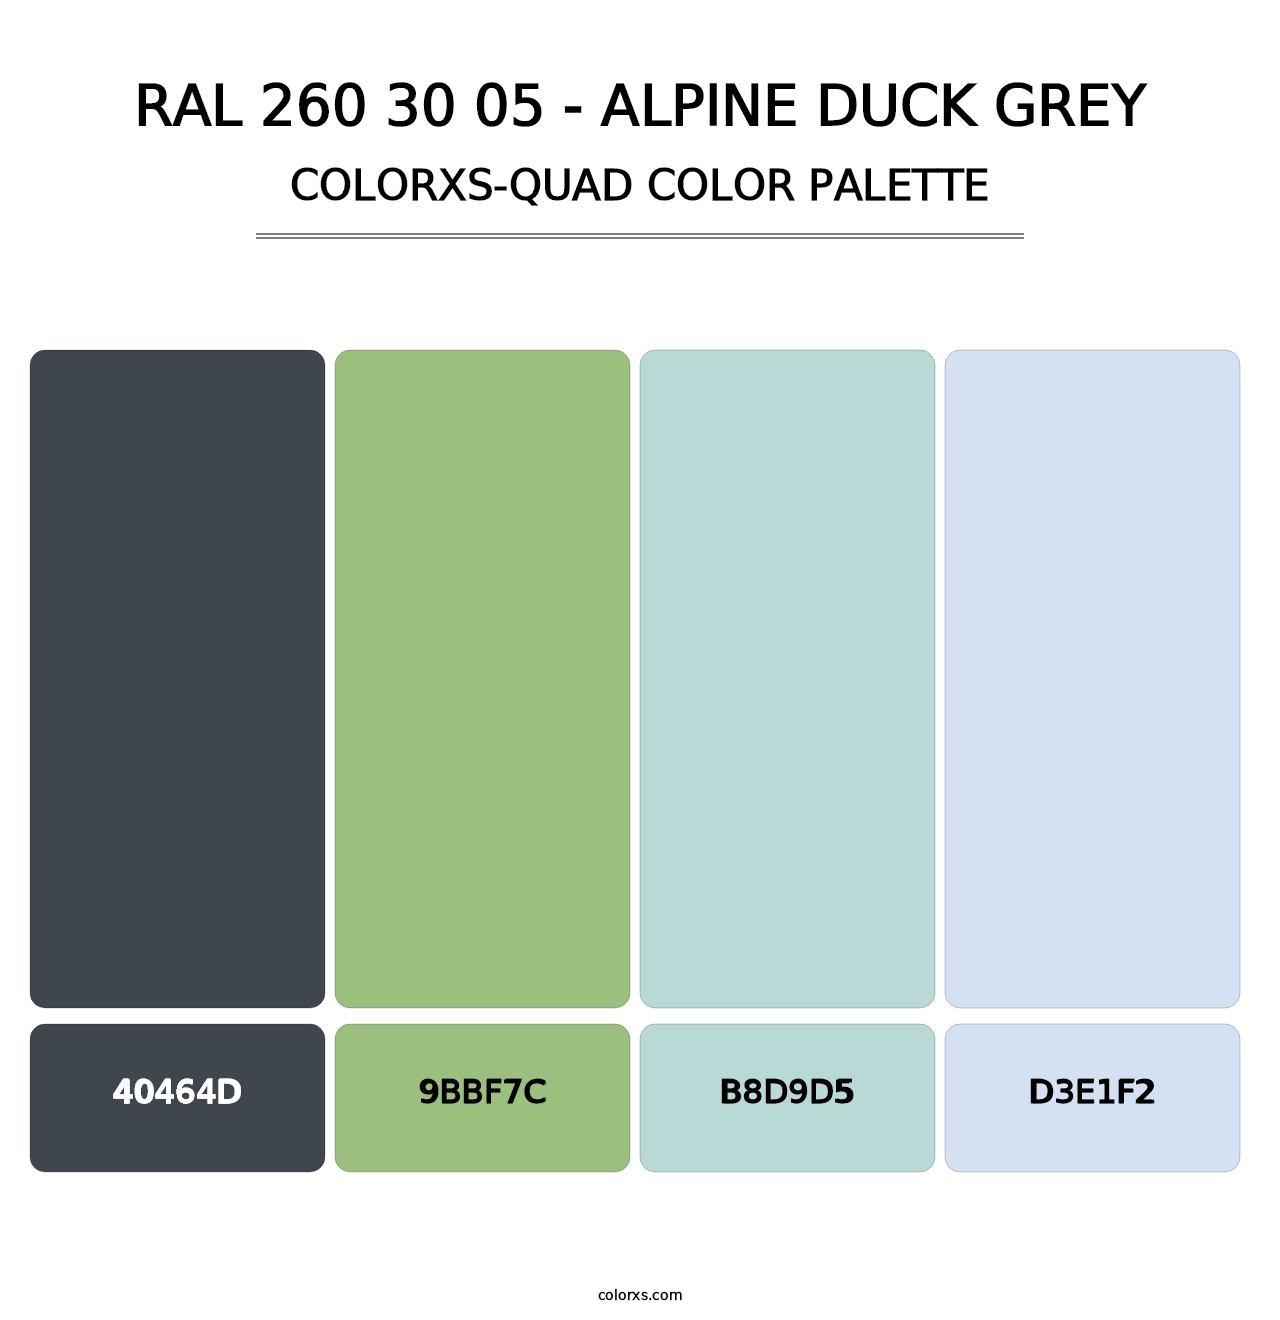 RAL 260 30 05 - Alpine Duck Grey - Colorxs Quad Palette